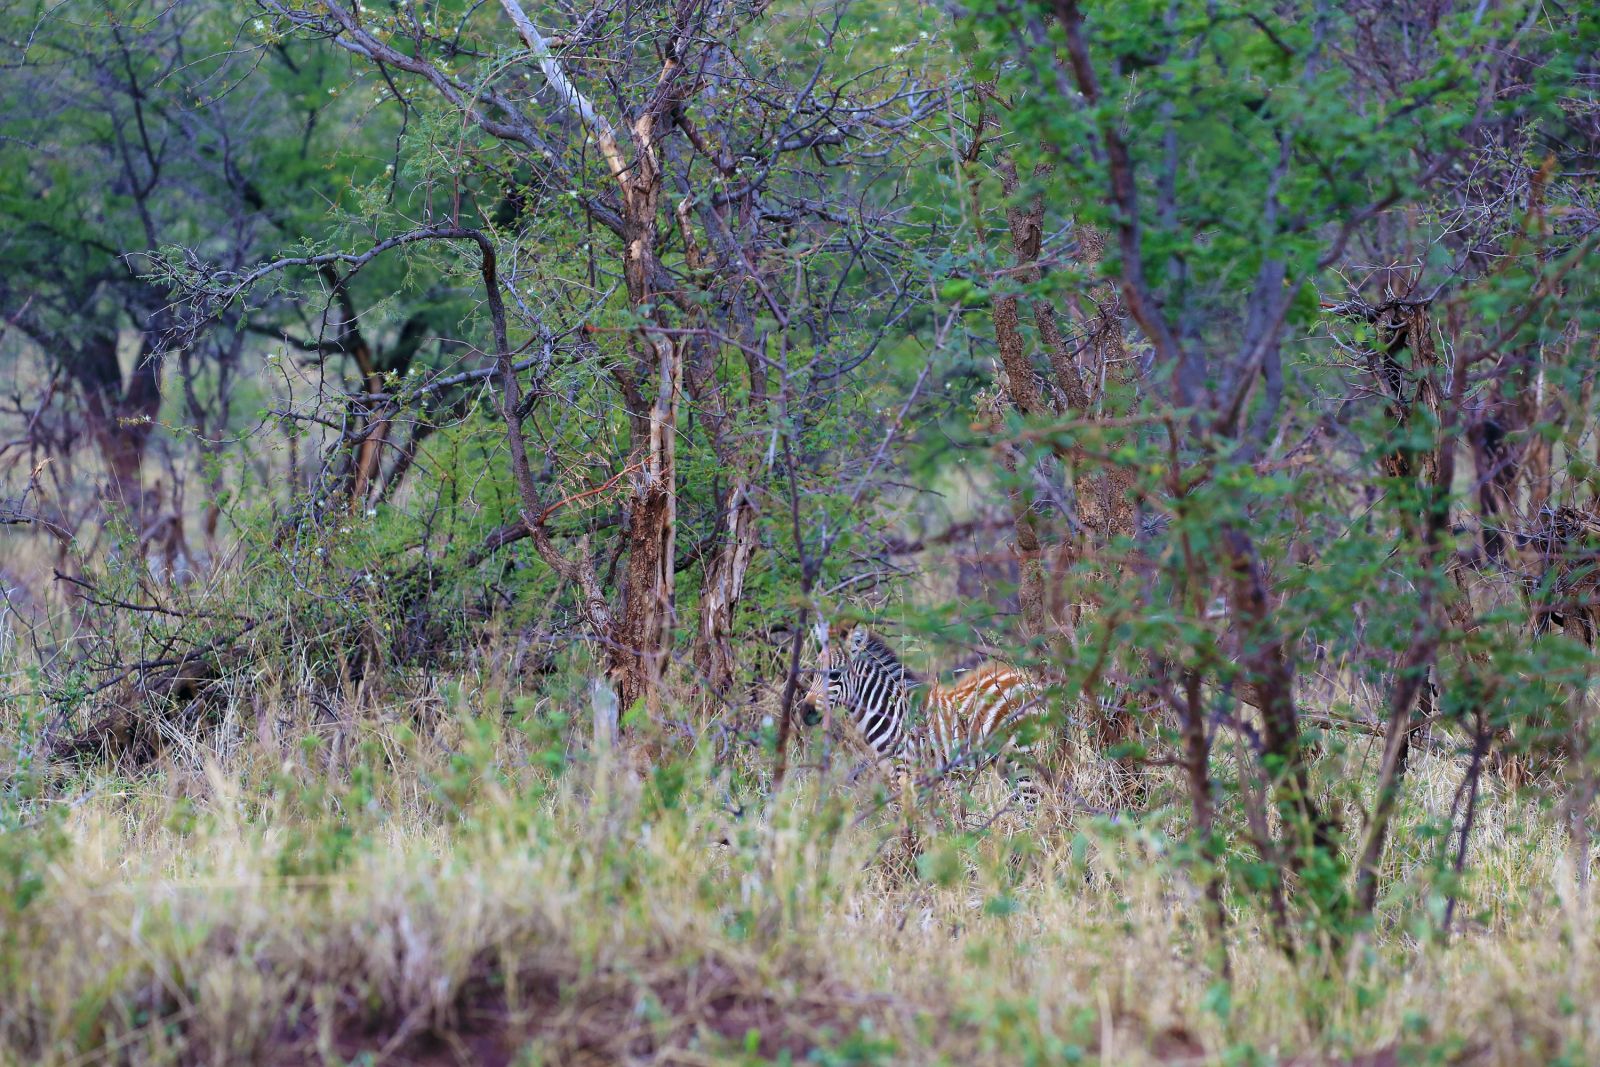 Gut versteckt bringt Sicherheit. Hier ein junges Zebra mitten im Gestrüpp. Solche Aufnahmen muss man mit manueler Focuseinstellung aufnehmen, um diesen Effekt erzielen zu können. Manchmal braucht es mehrere Versuche, bis die Schärfe dann doch richtig sitz